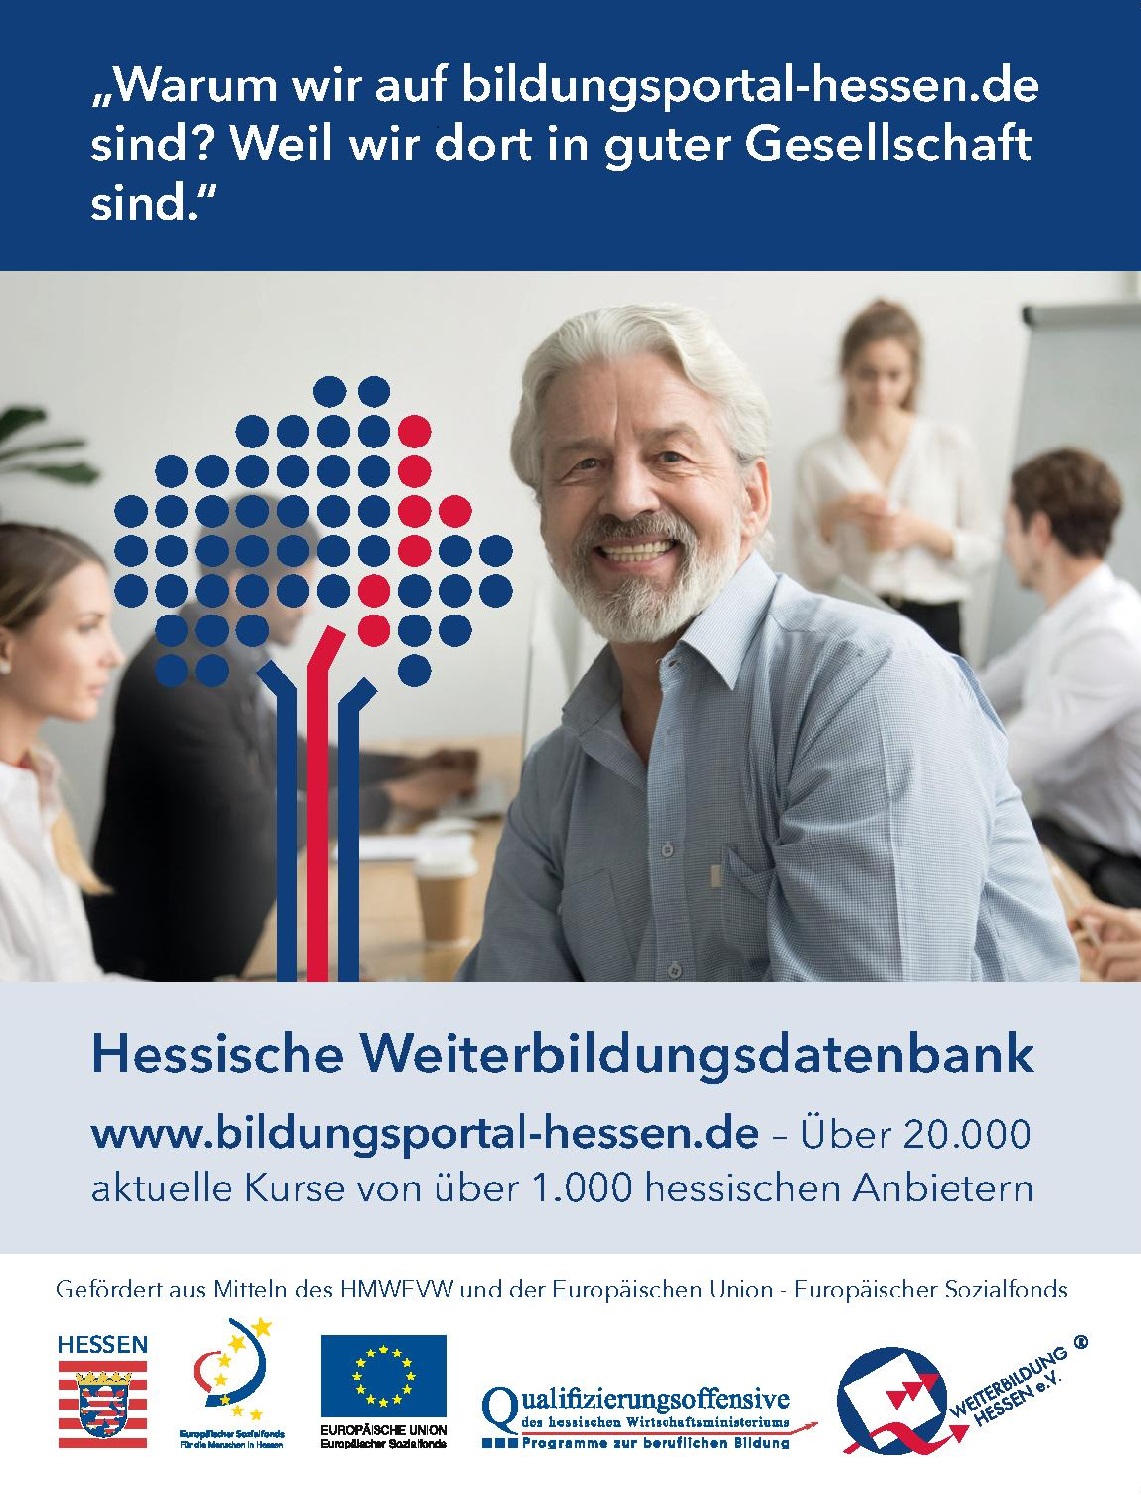 Werbung für die Hessische Weiterbildungsdatenbank (5 Personen in Klassenraum)